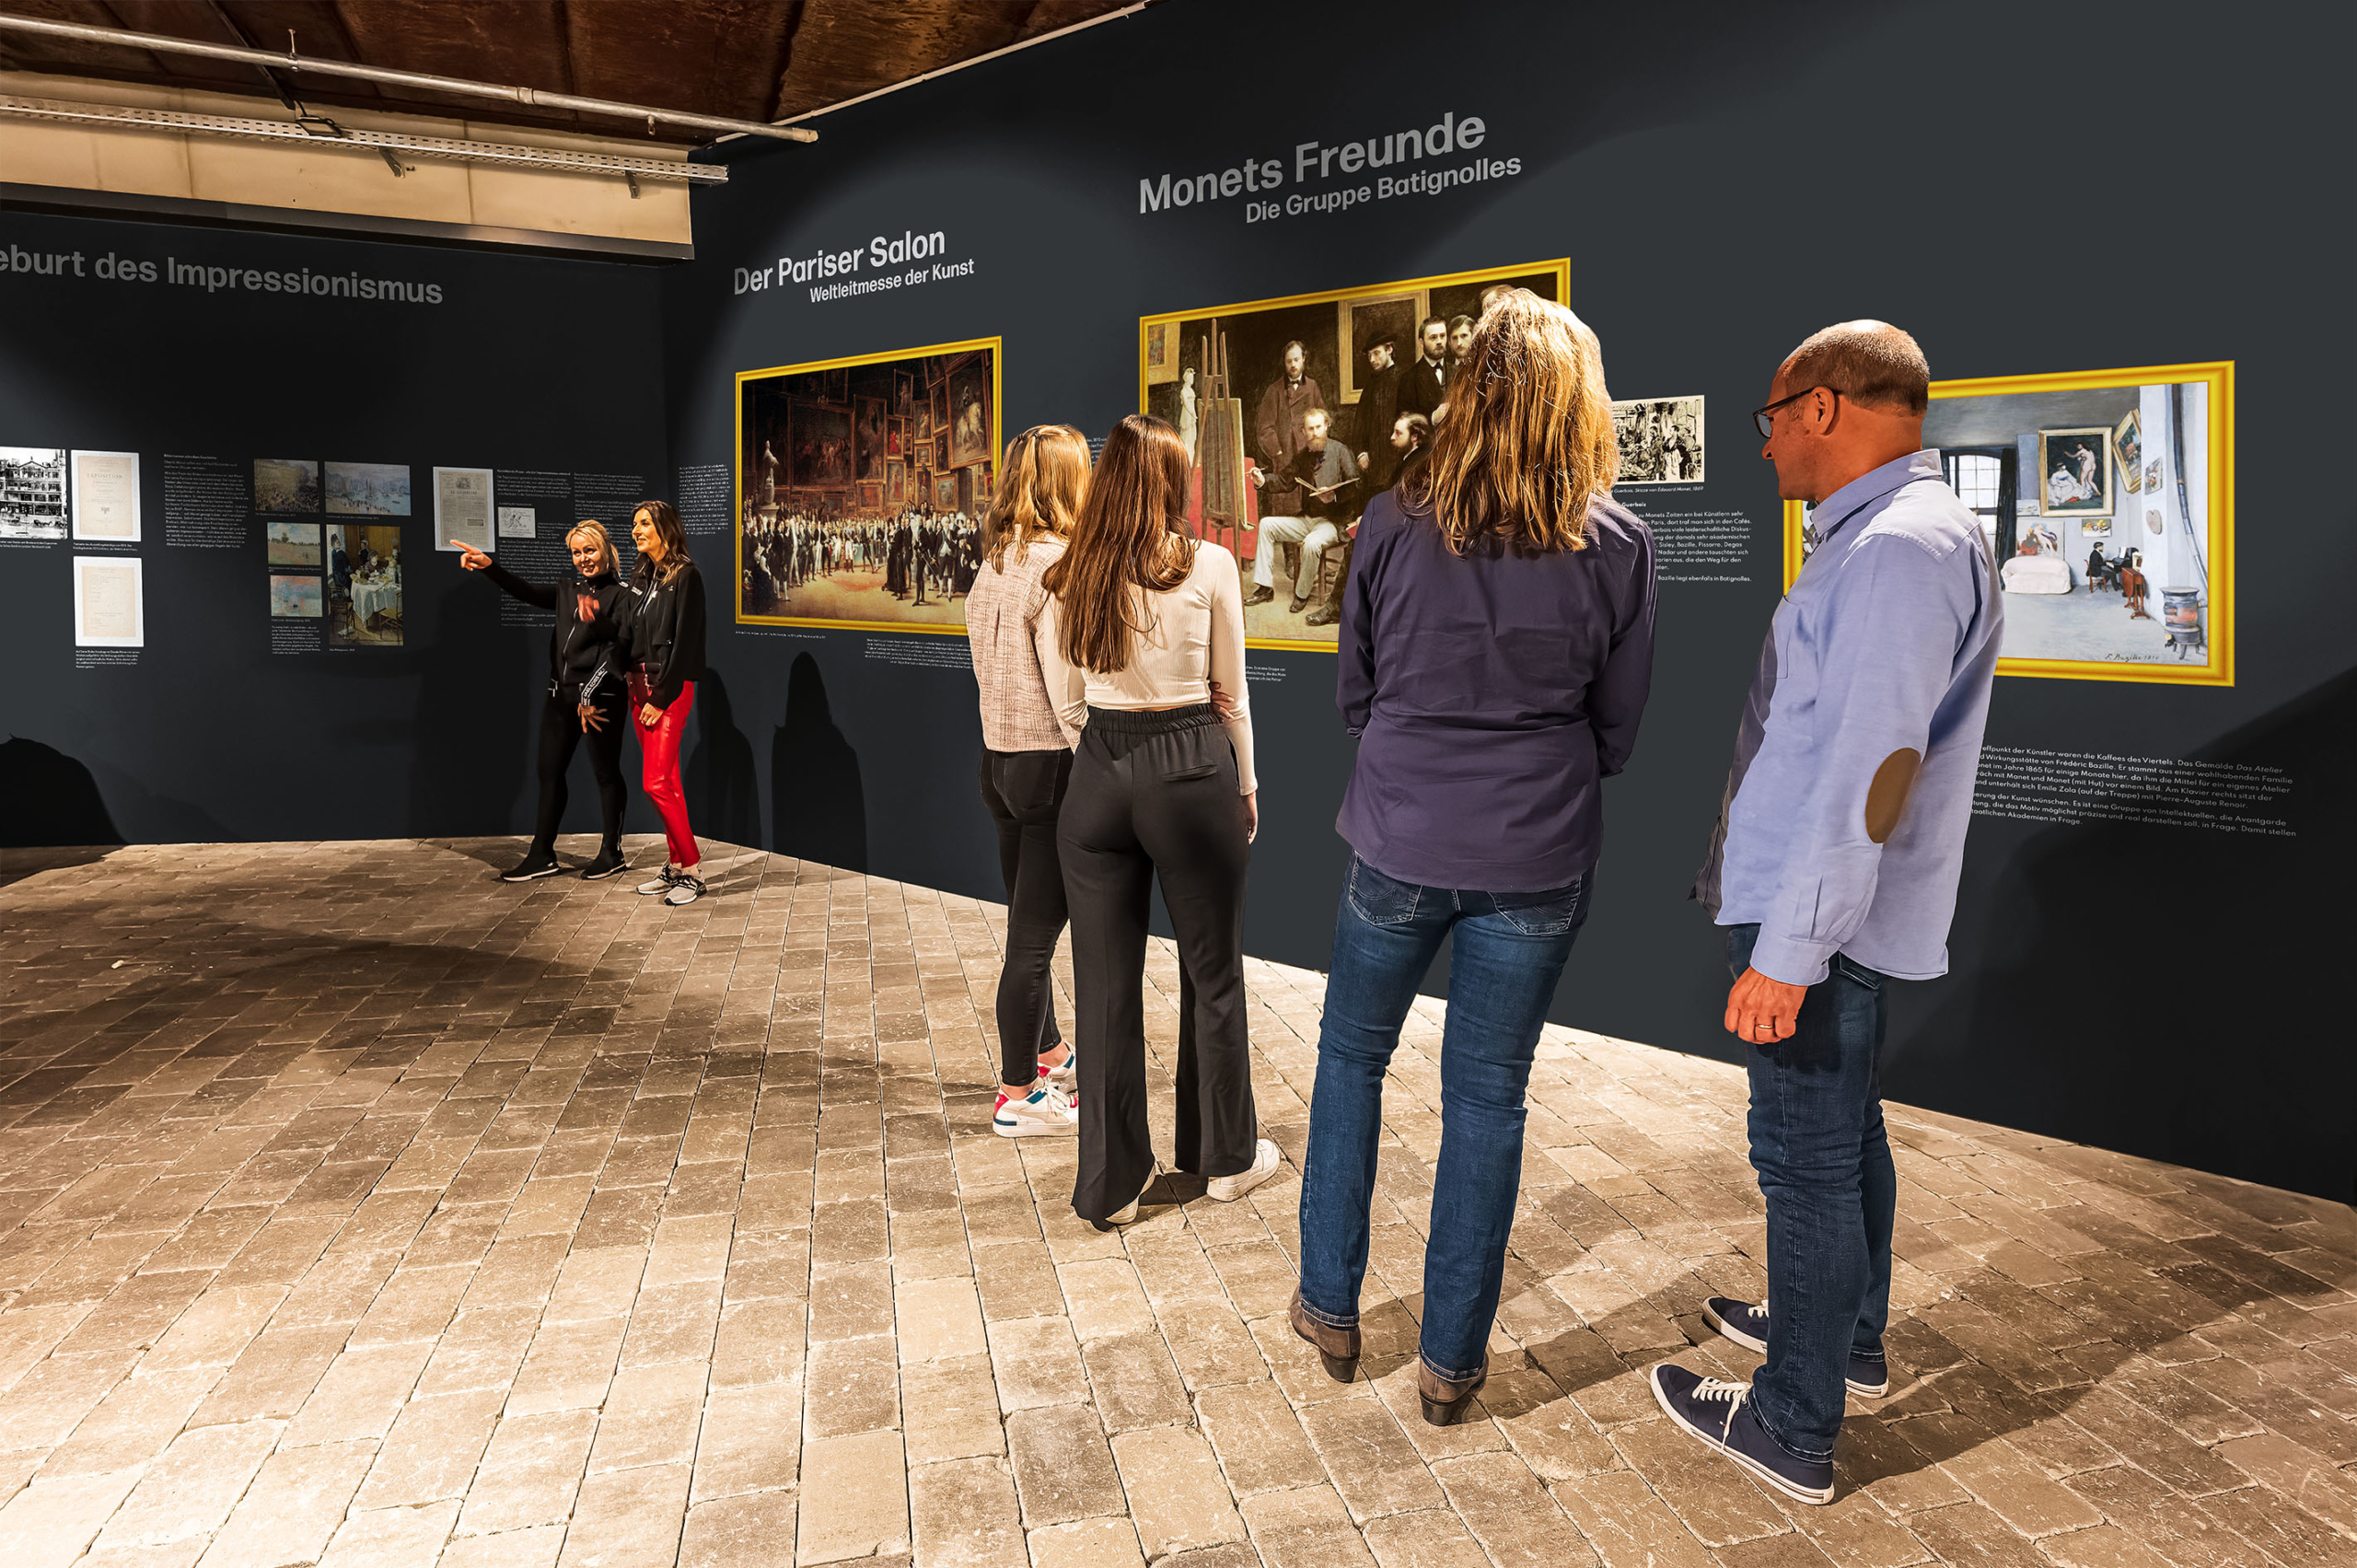 Besucher in der Monet Ausstellung betrachten Bilder im goldenen Rahmen